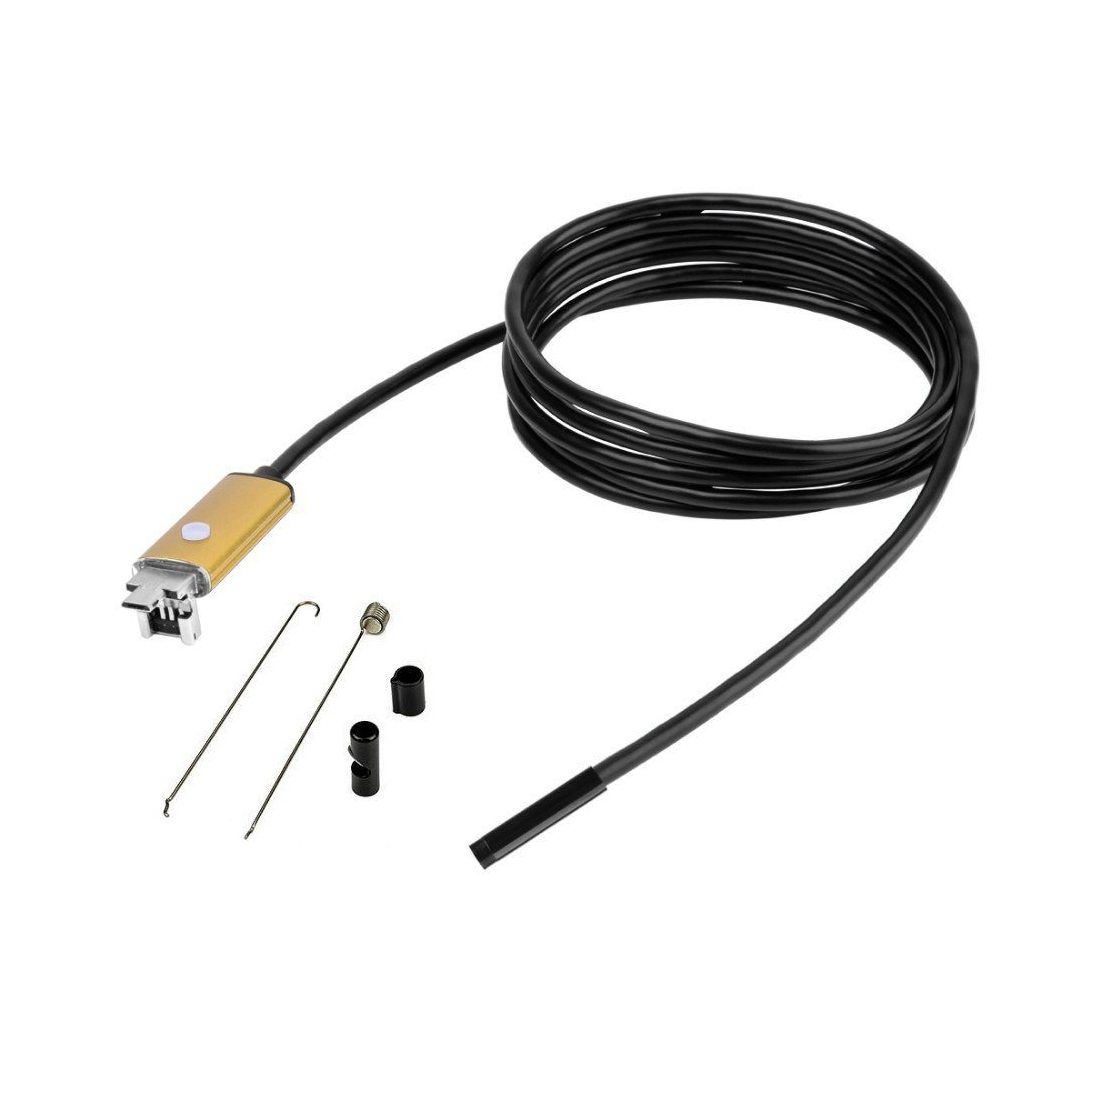 [ Garantie 1 an ] Camera d' Inspection Endoscopique 5 Mètres USB 2 en 1 Waterproof IP67 7 mm de diamètre 6 LED pour SAMSUNG G